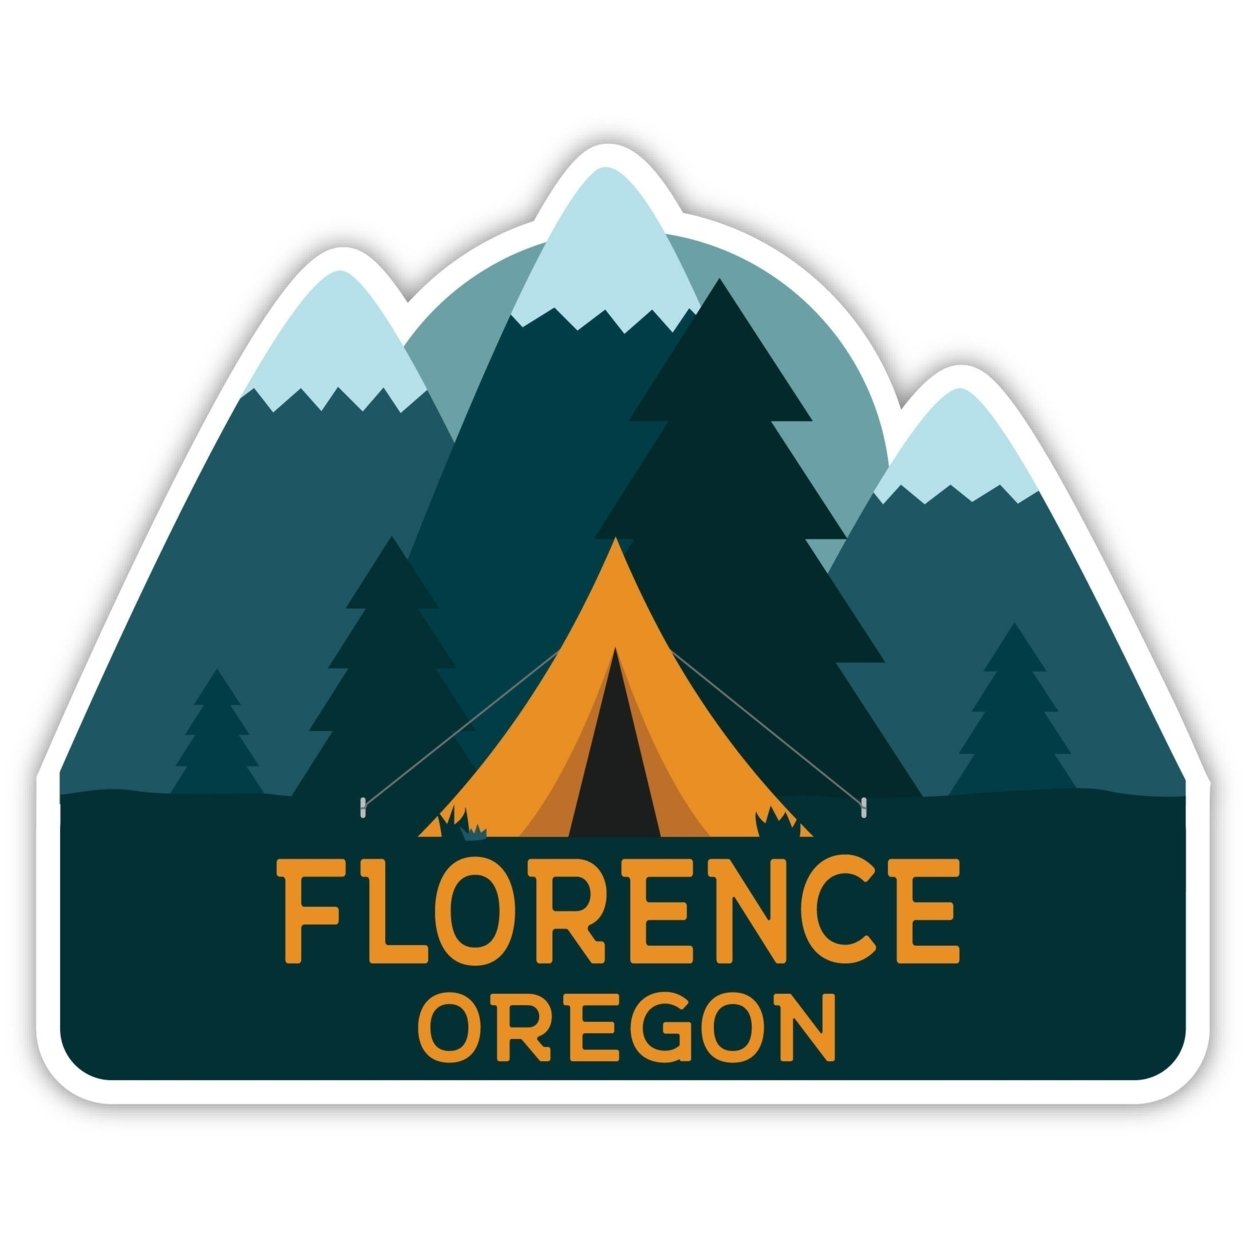 Florence Oregon Souvenir Decorative Stickers (Choose Theme And Size) - Single Unit, 8-Inch, Tent